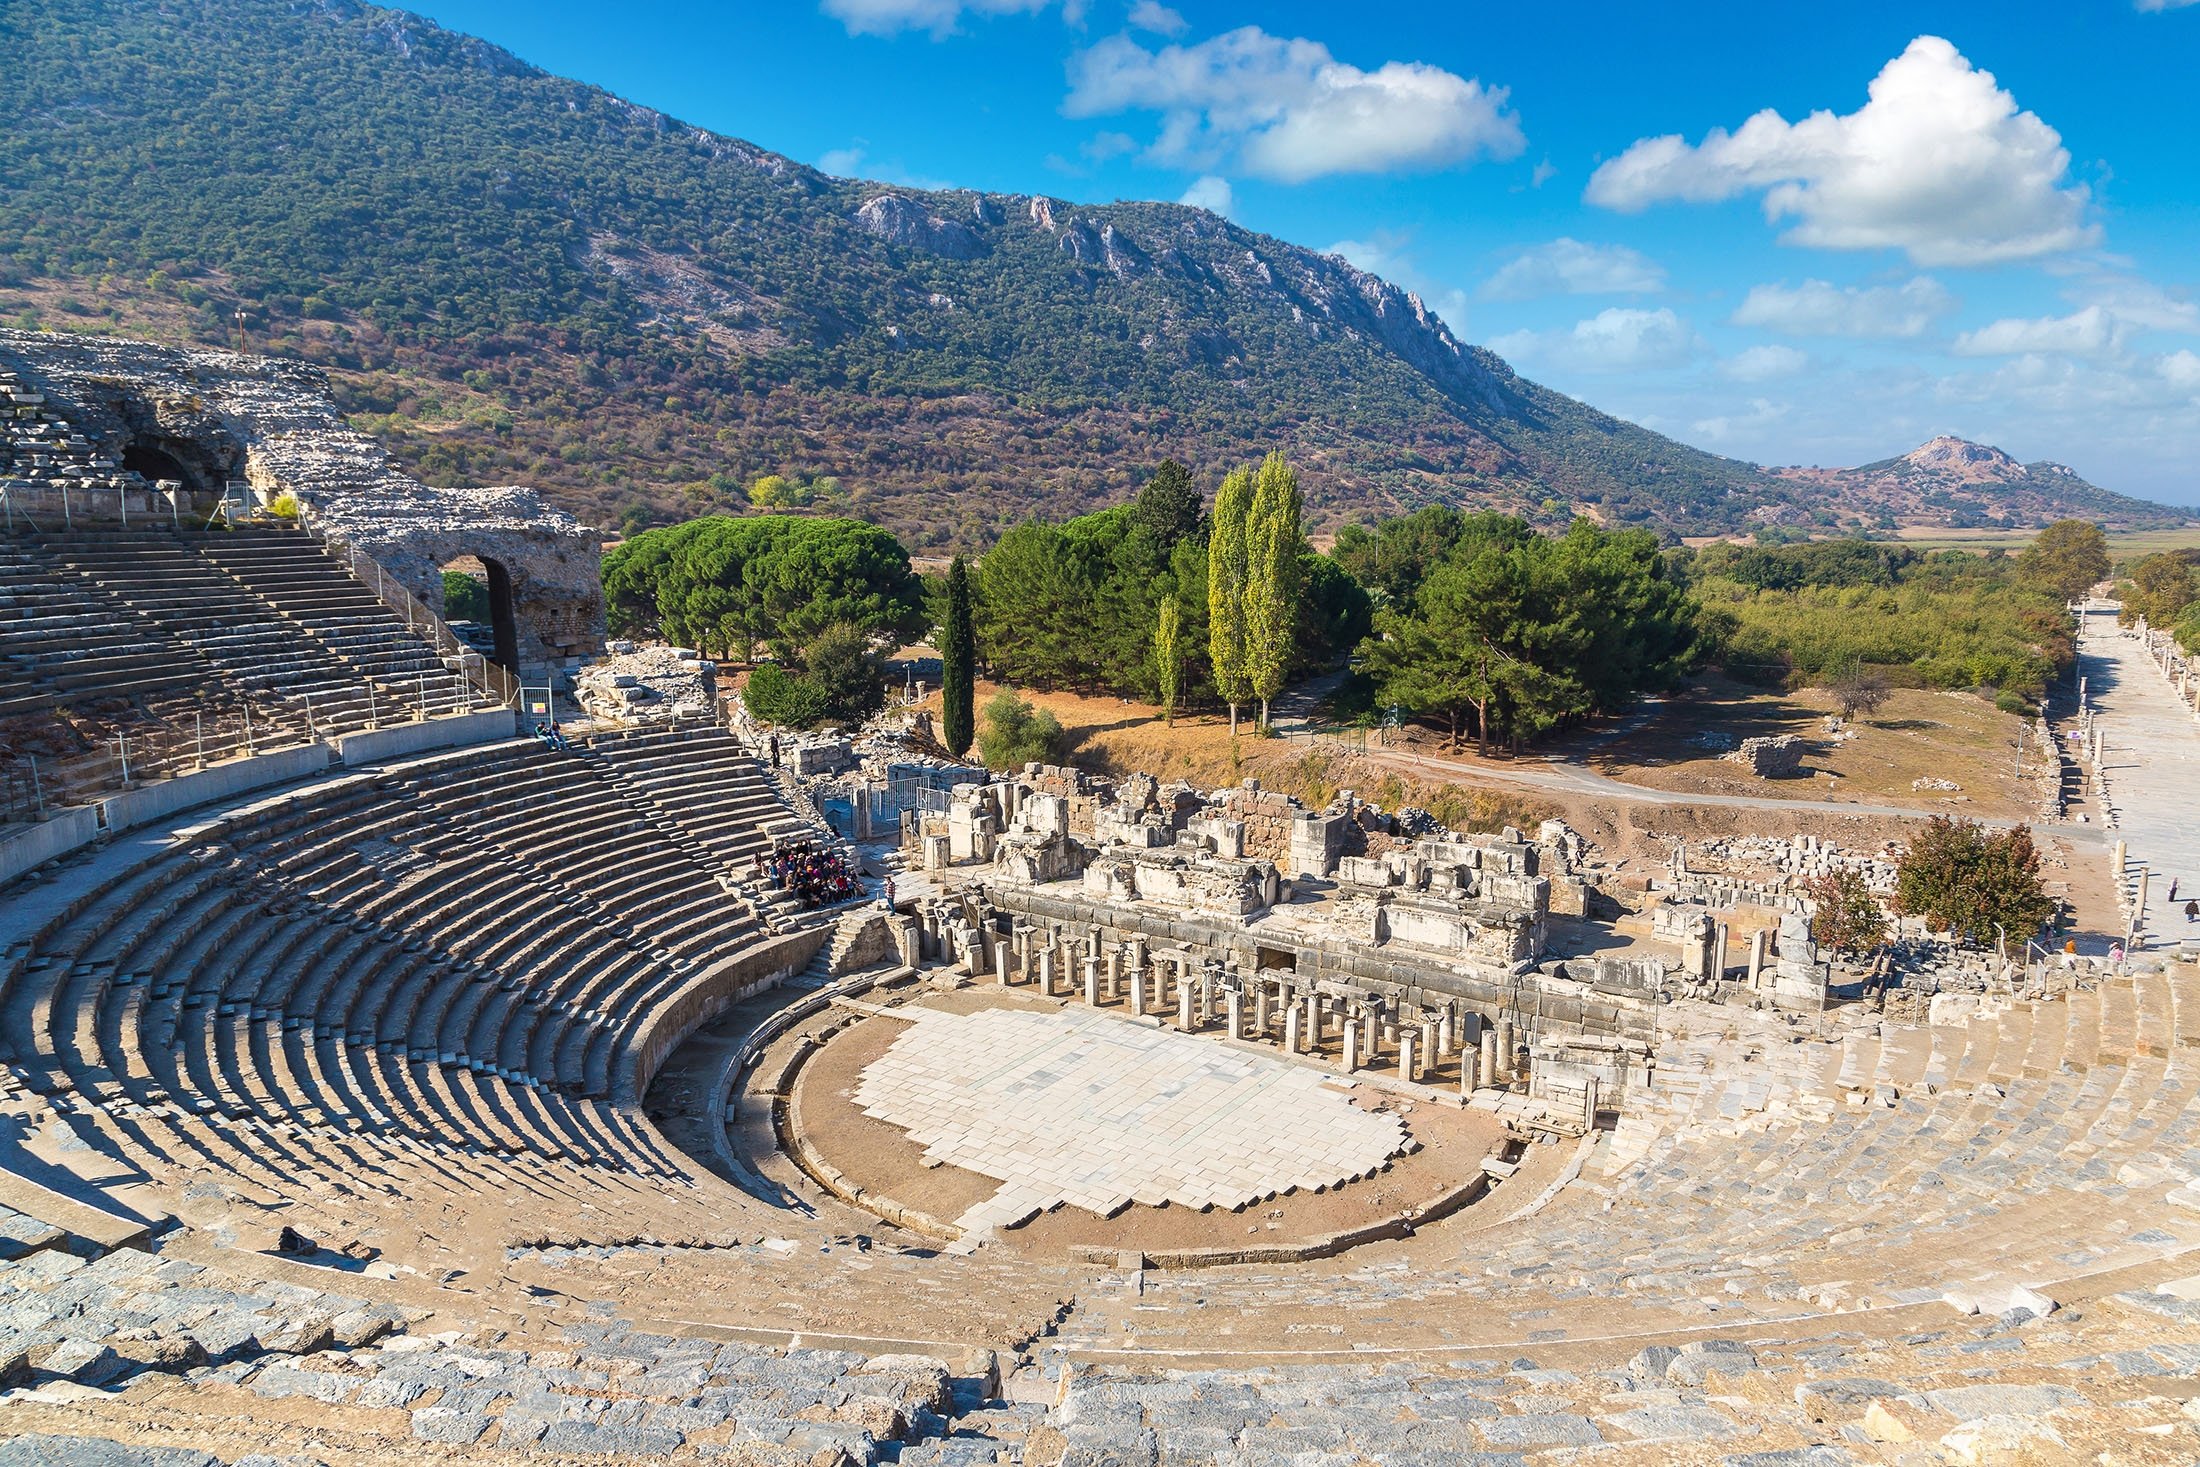 Teater antik kota kuno Efesus yang paling terpelihara secara spektakuler di Turki memberikan pengalaman sekali seumur hidup saat menyelenggarakan pertunjukan.  (Foto Shutterstock)